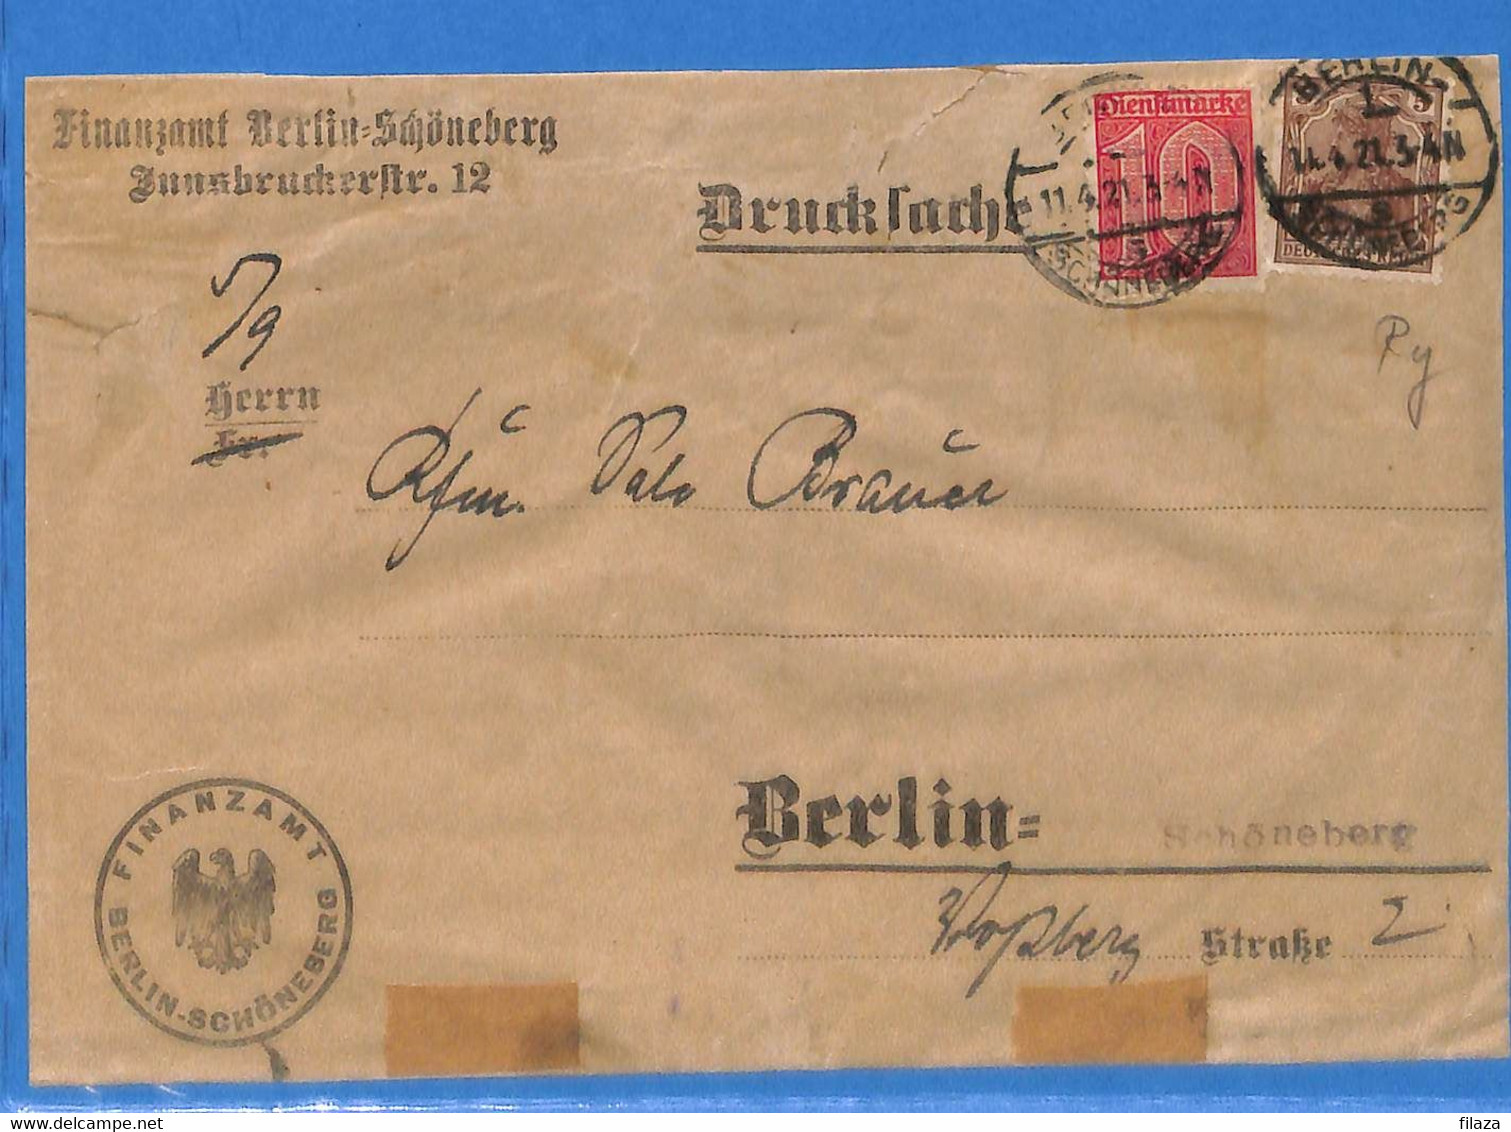 Allemagne Reich 1921 Lettre De Berlin (G11103) - Briefe U. Dokumente